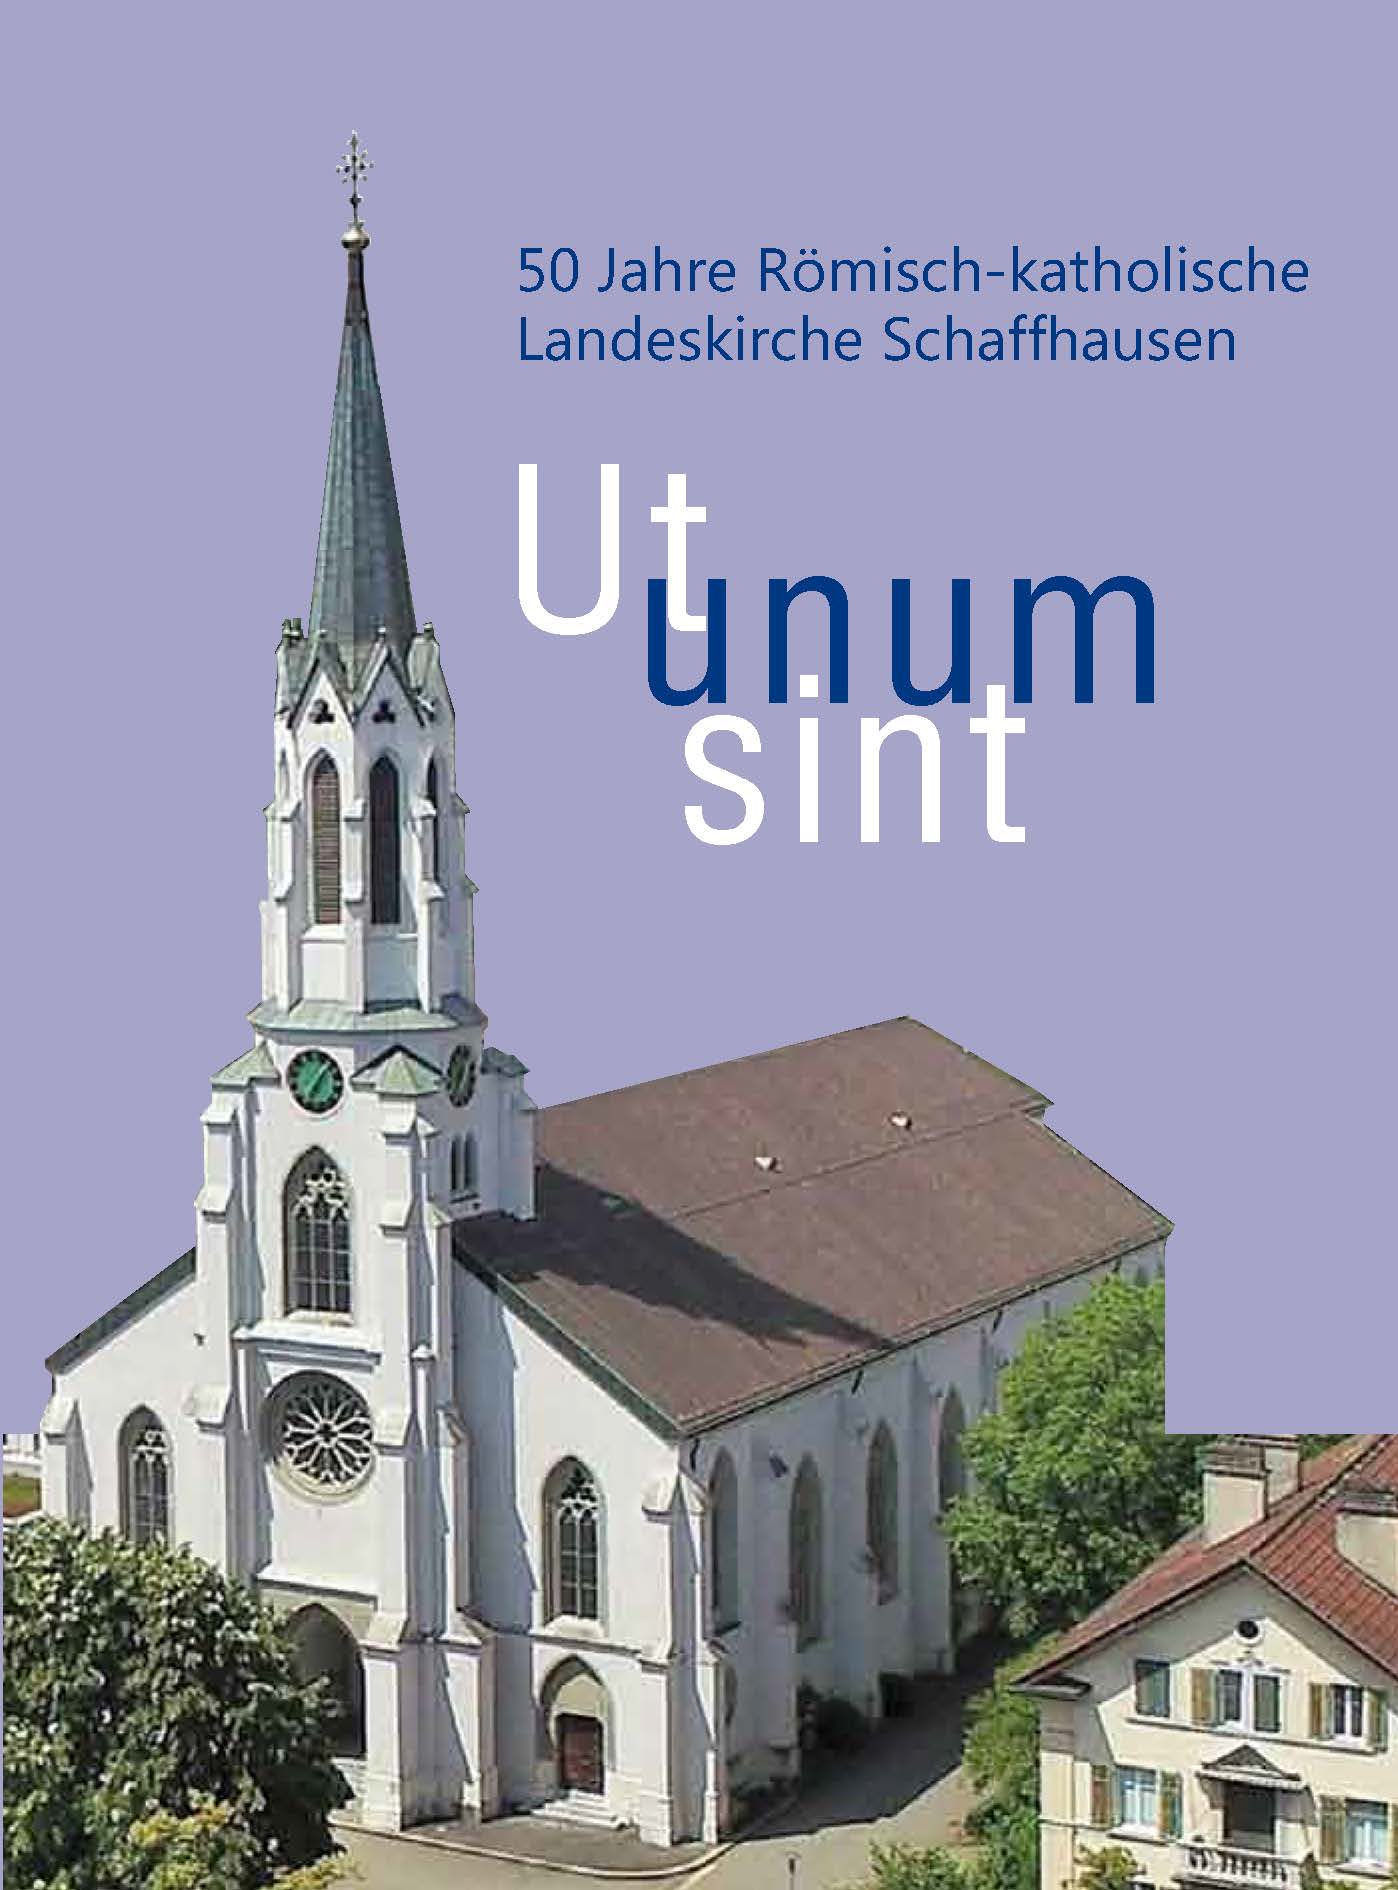 Festschrift 50 Jahre Landeskirche Schaffhausen